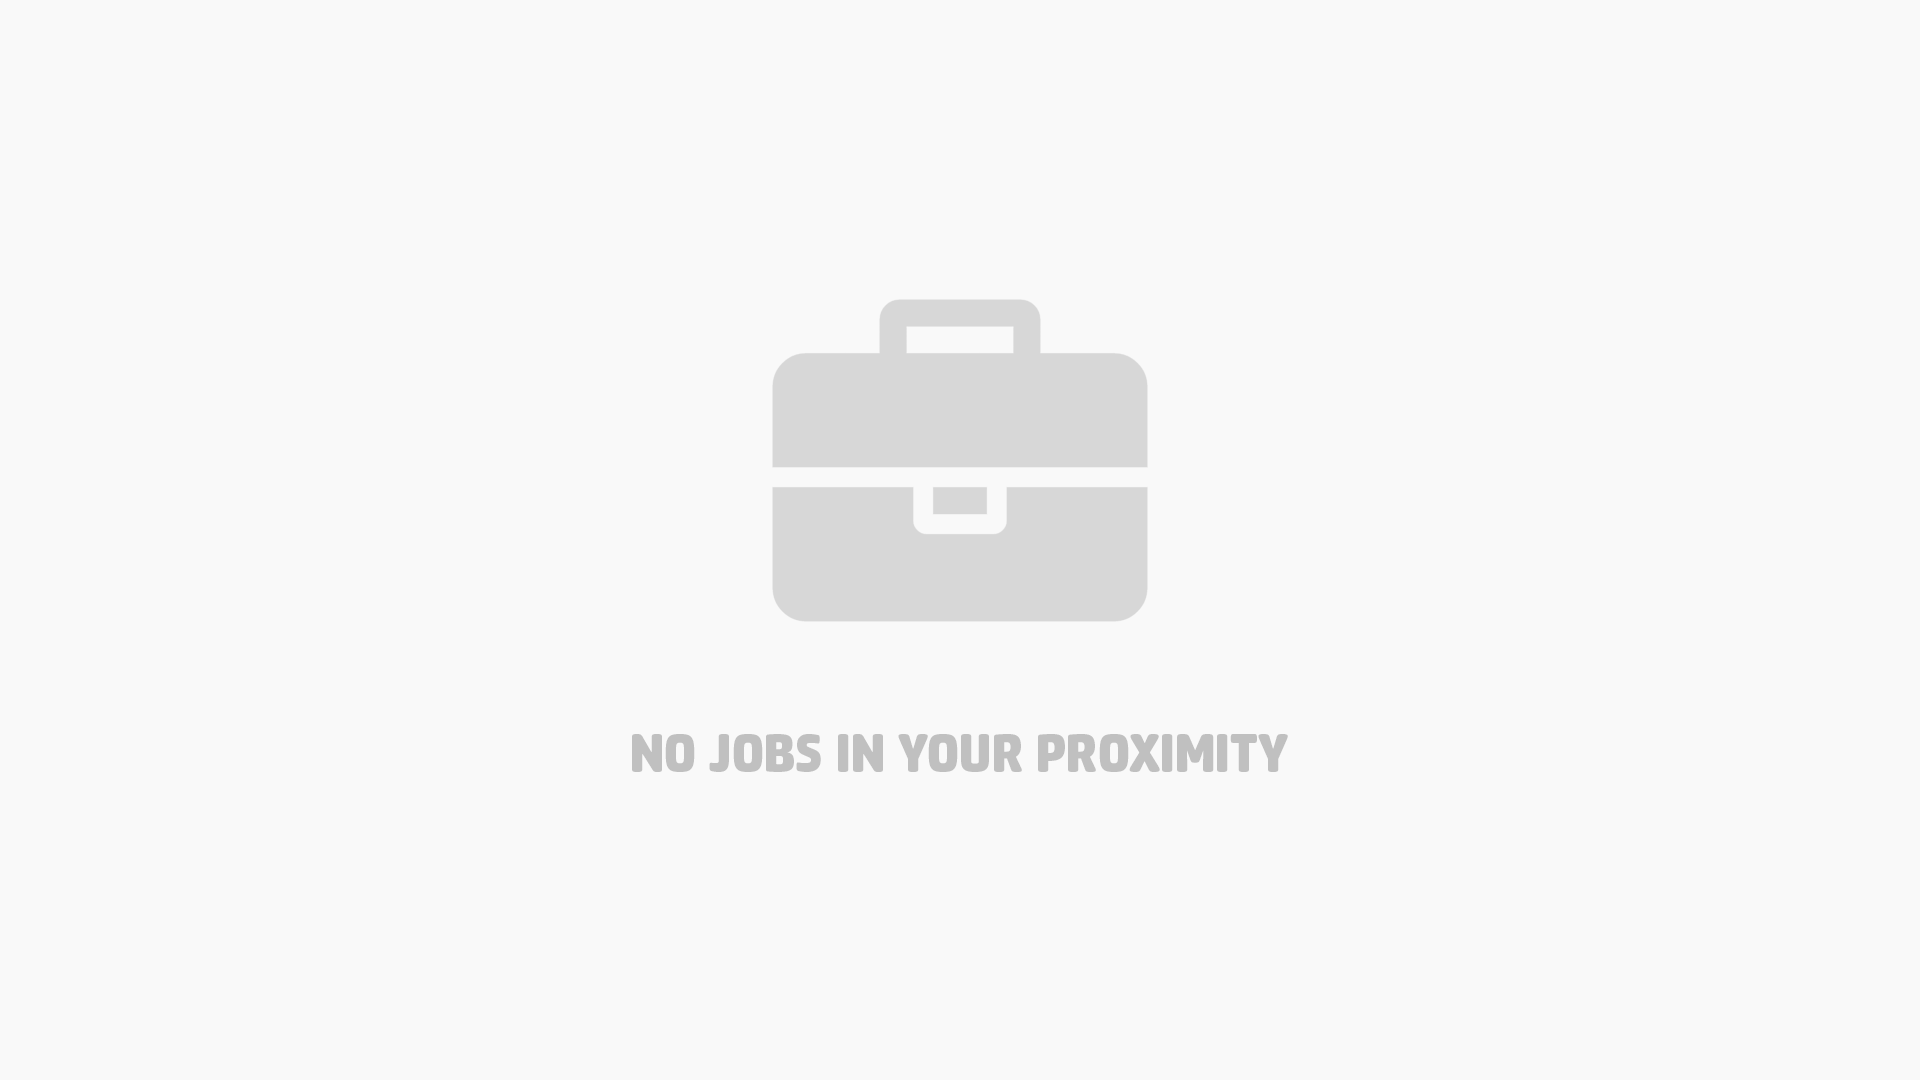 Nearber.com job image post